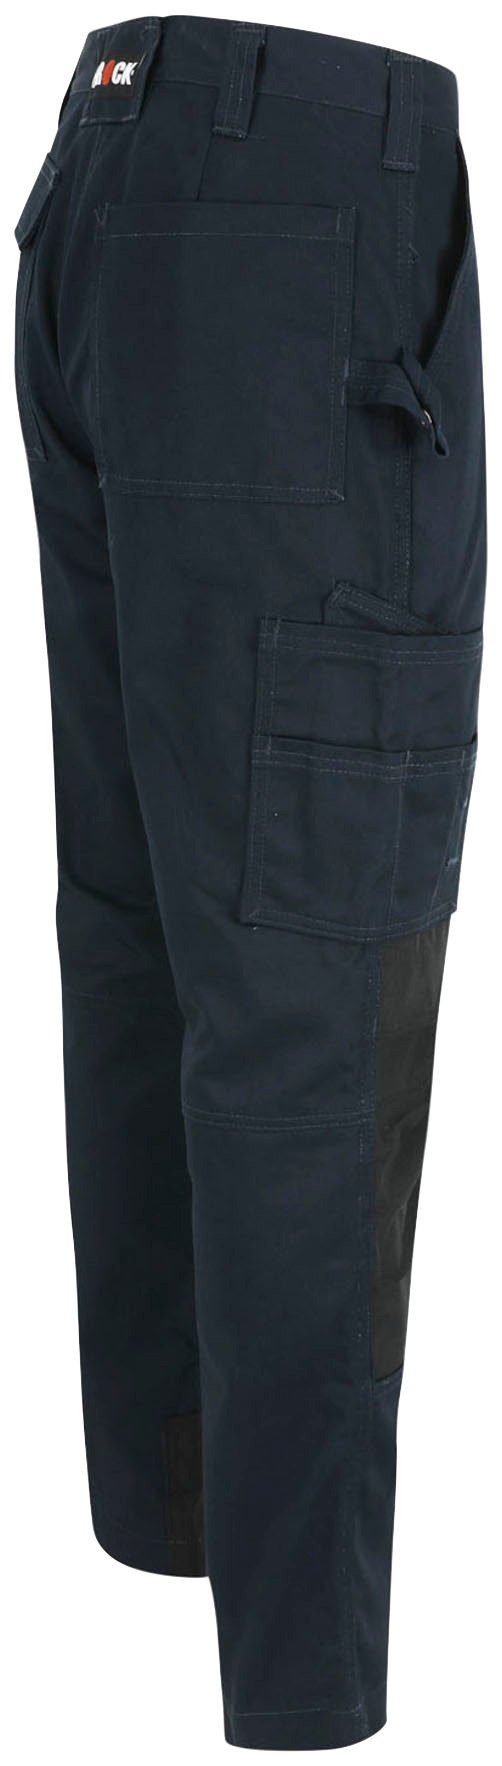 Herock Arbeitshose Titan Knopf, marine sehr Hose Taschen, 12 verdeckter Wasserabweisend, 3-Naht, angenehm